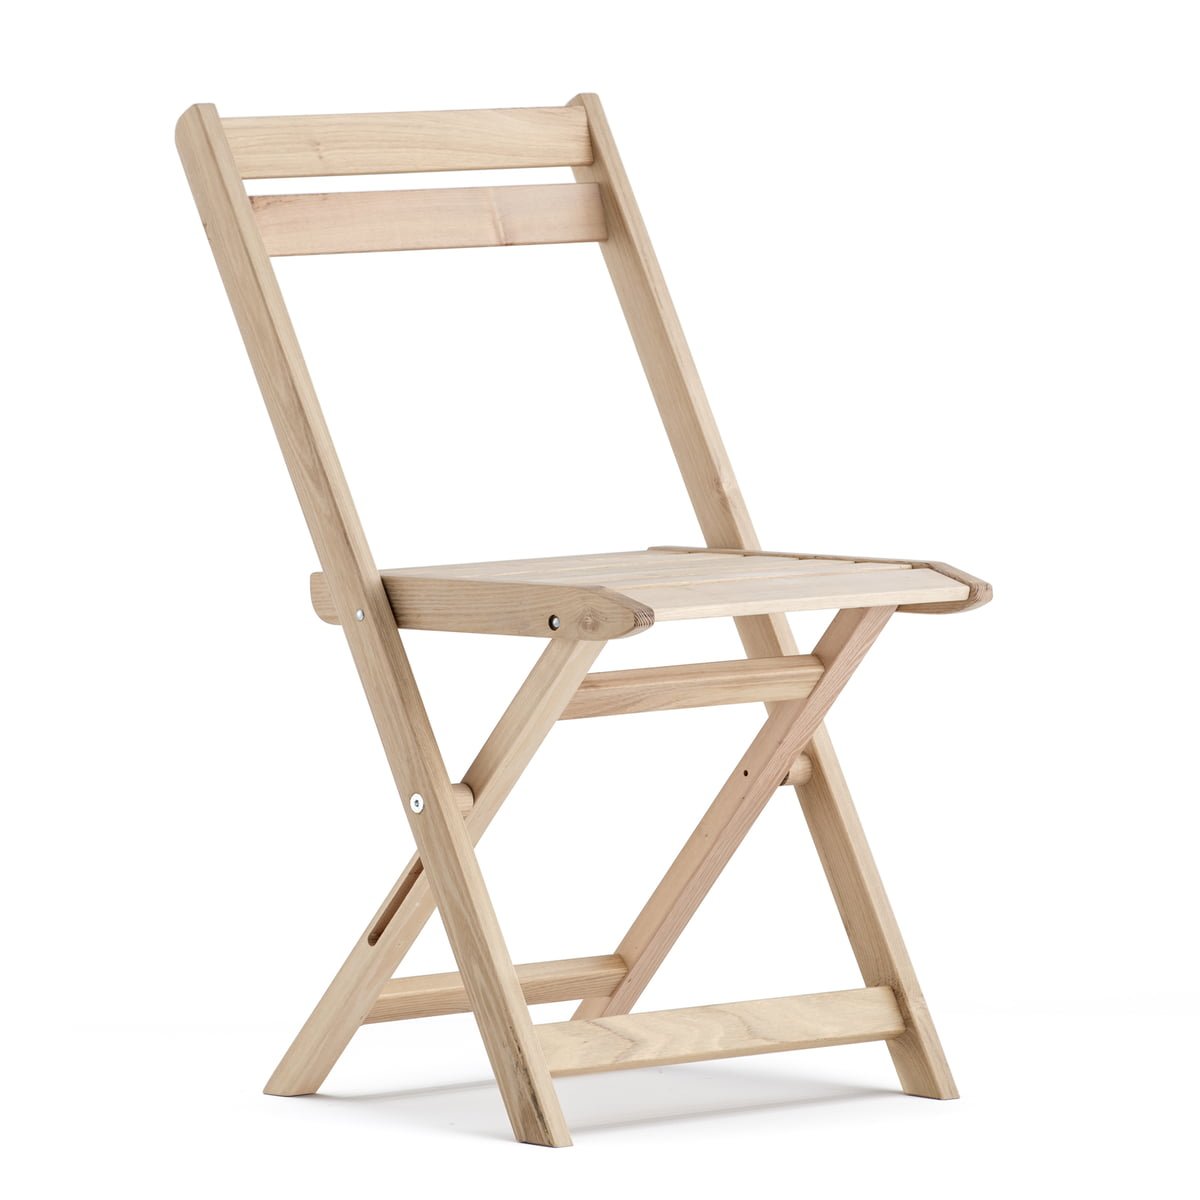 Куплю складные деревянные стулья. Складной стул хофф. Стул икеа складной деревянный со спинкой. Стул складной Hoff дерево. Складные деревянные стулья хофф.